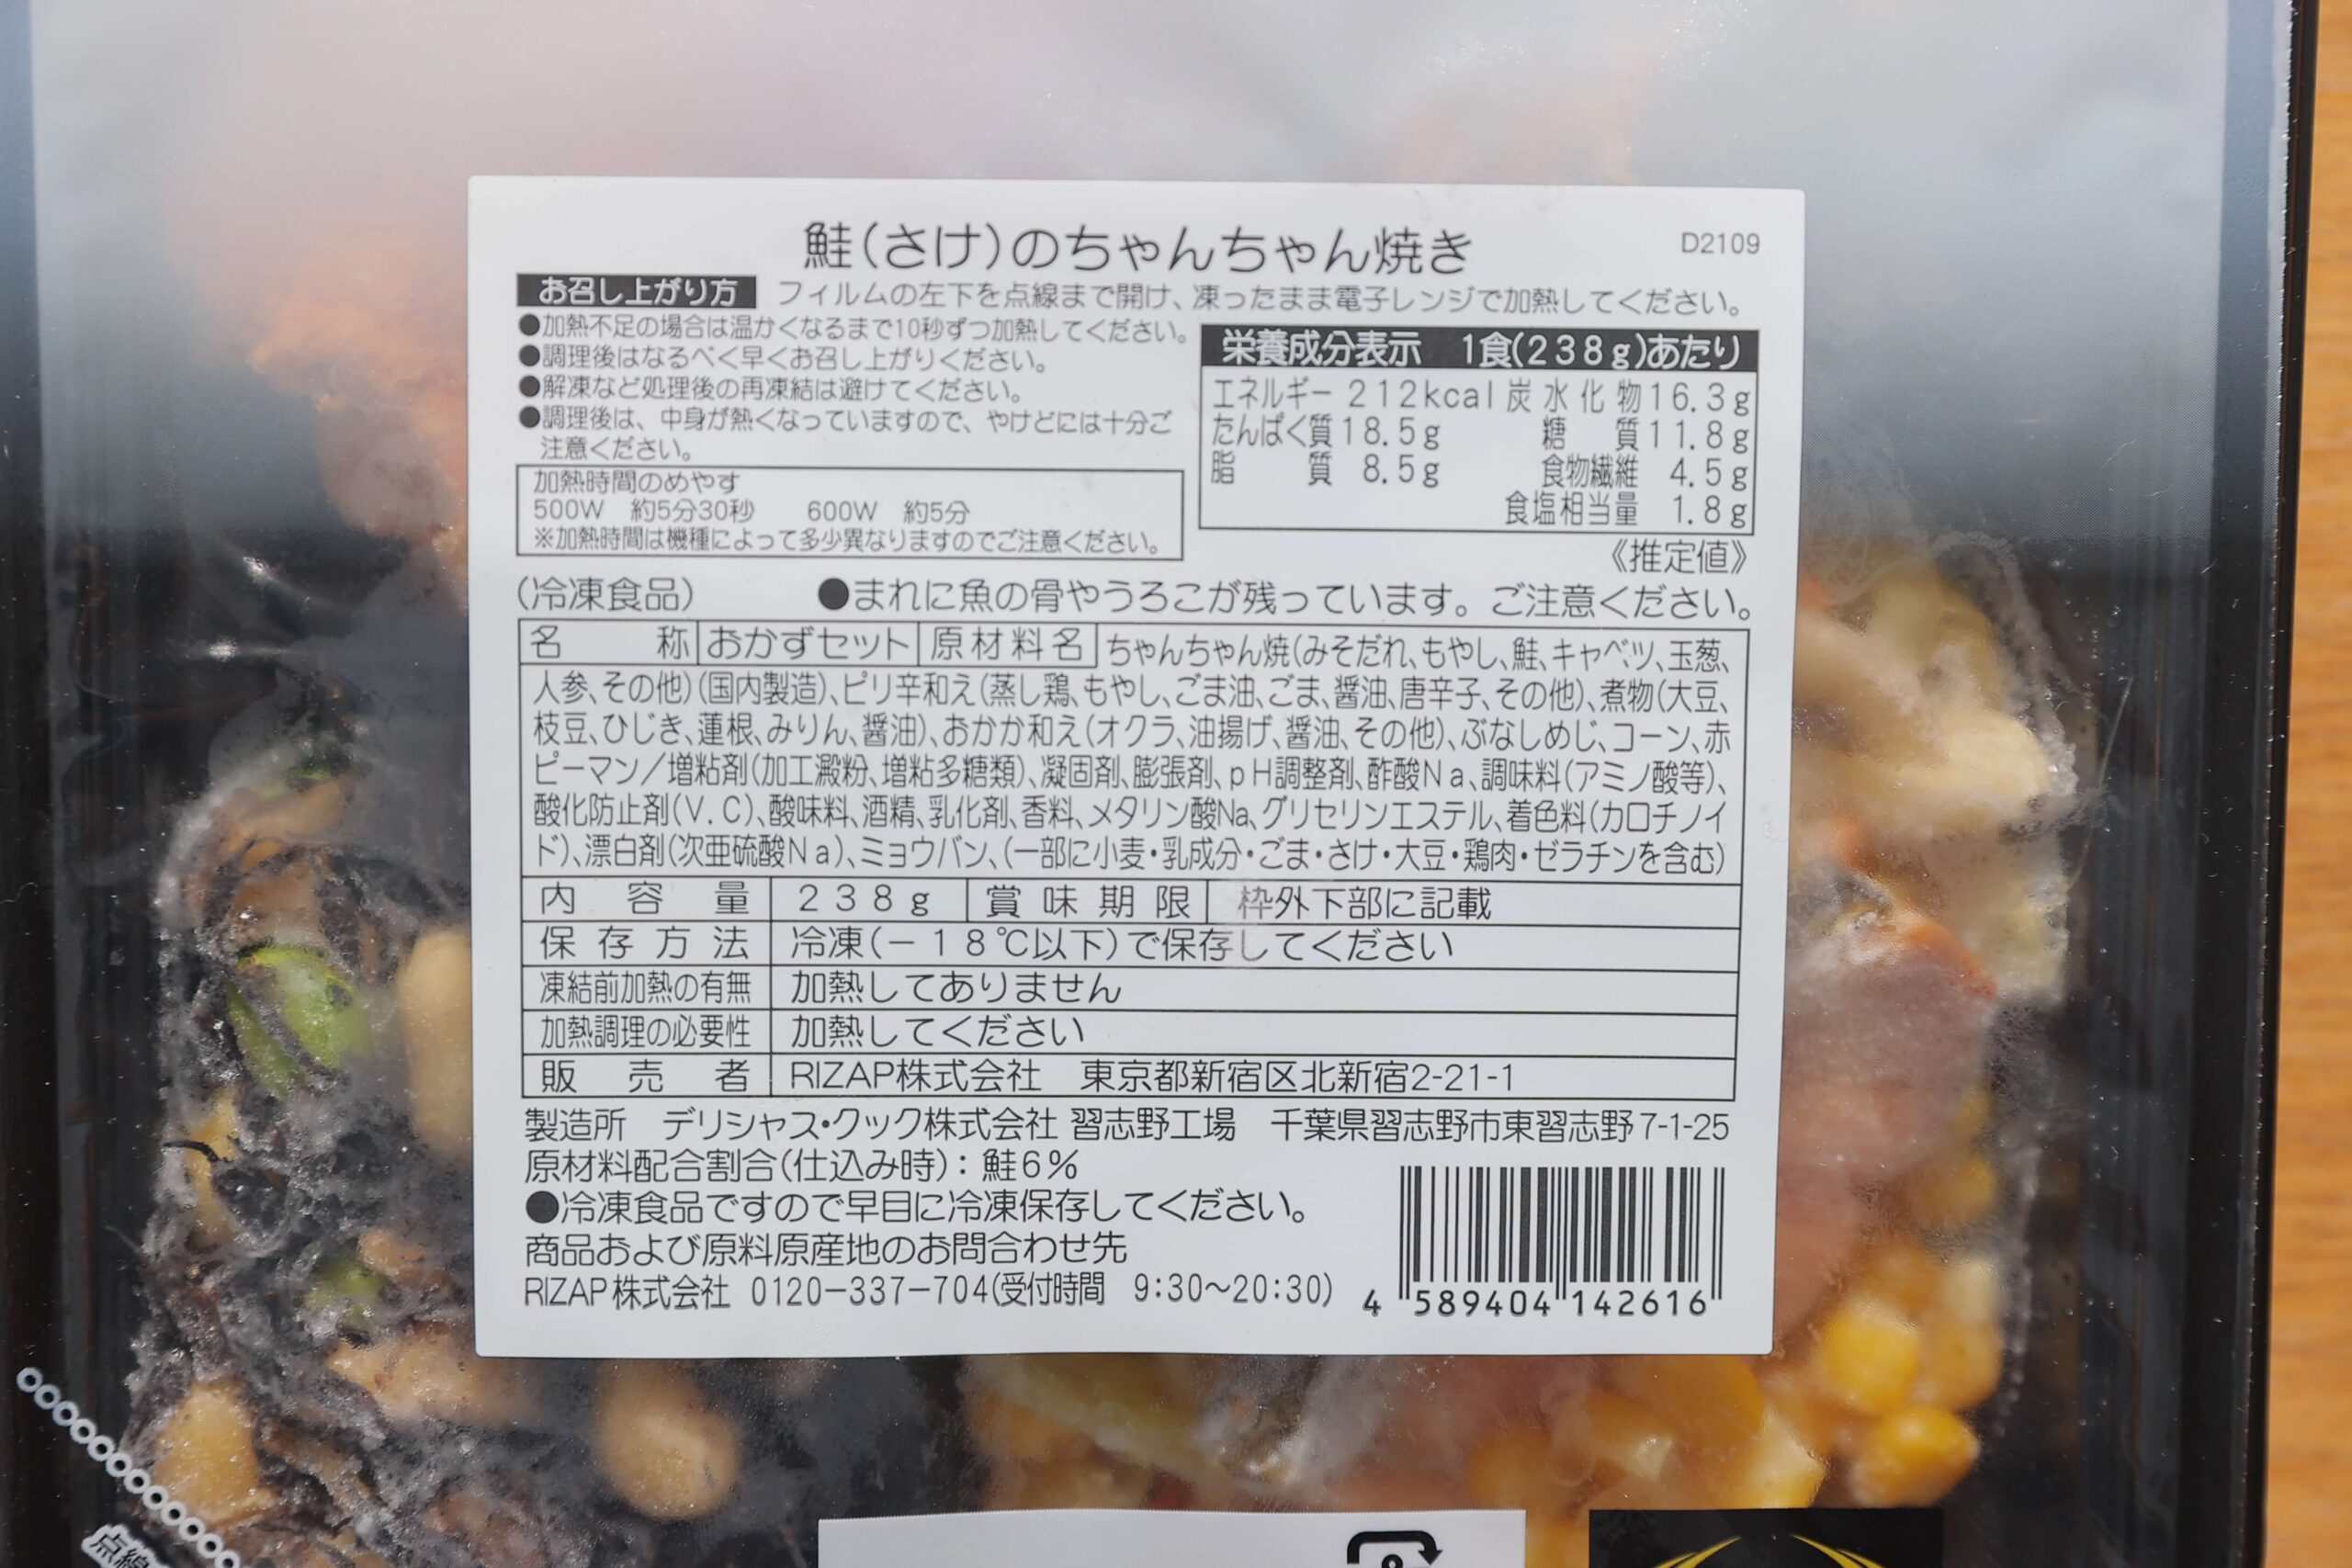 ライザップのサポートミール「鮭(さけ)のちゃんちゃん焼き」の栄養成分表の写真